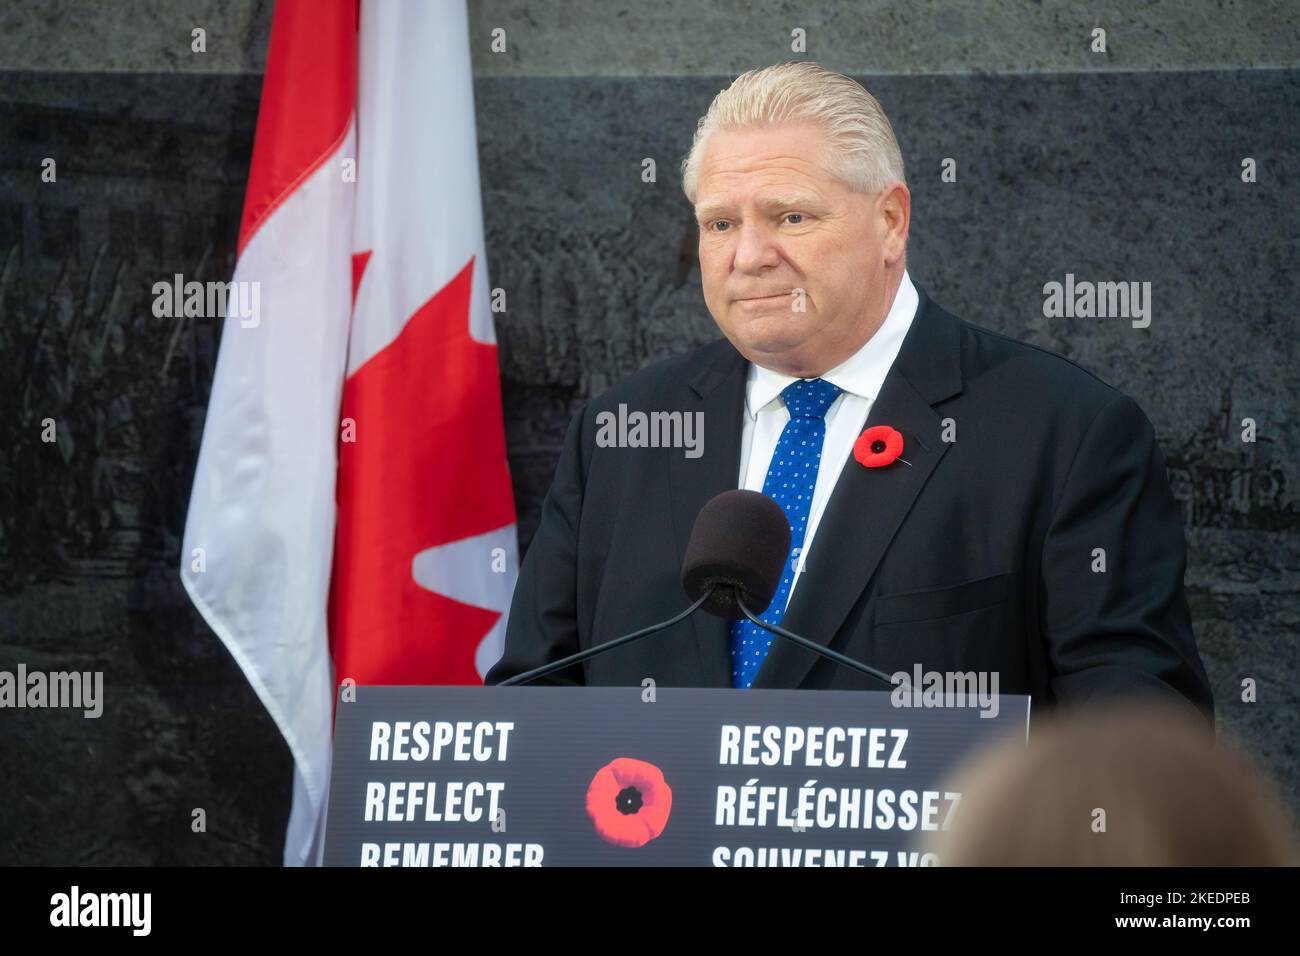 Le premier ministre de l'Ontario, Doug Ford, prononce un discours lors d'une cérémonie du jour du souvenir devant le monument commémoratif de guerre des anciens combattants de l'Ontario, à Queen's Park. Banque D'Images